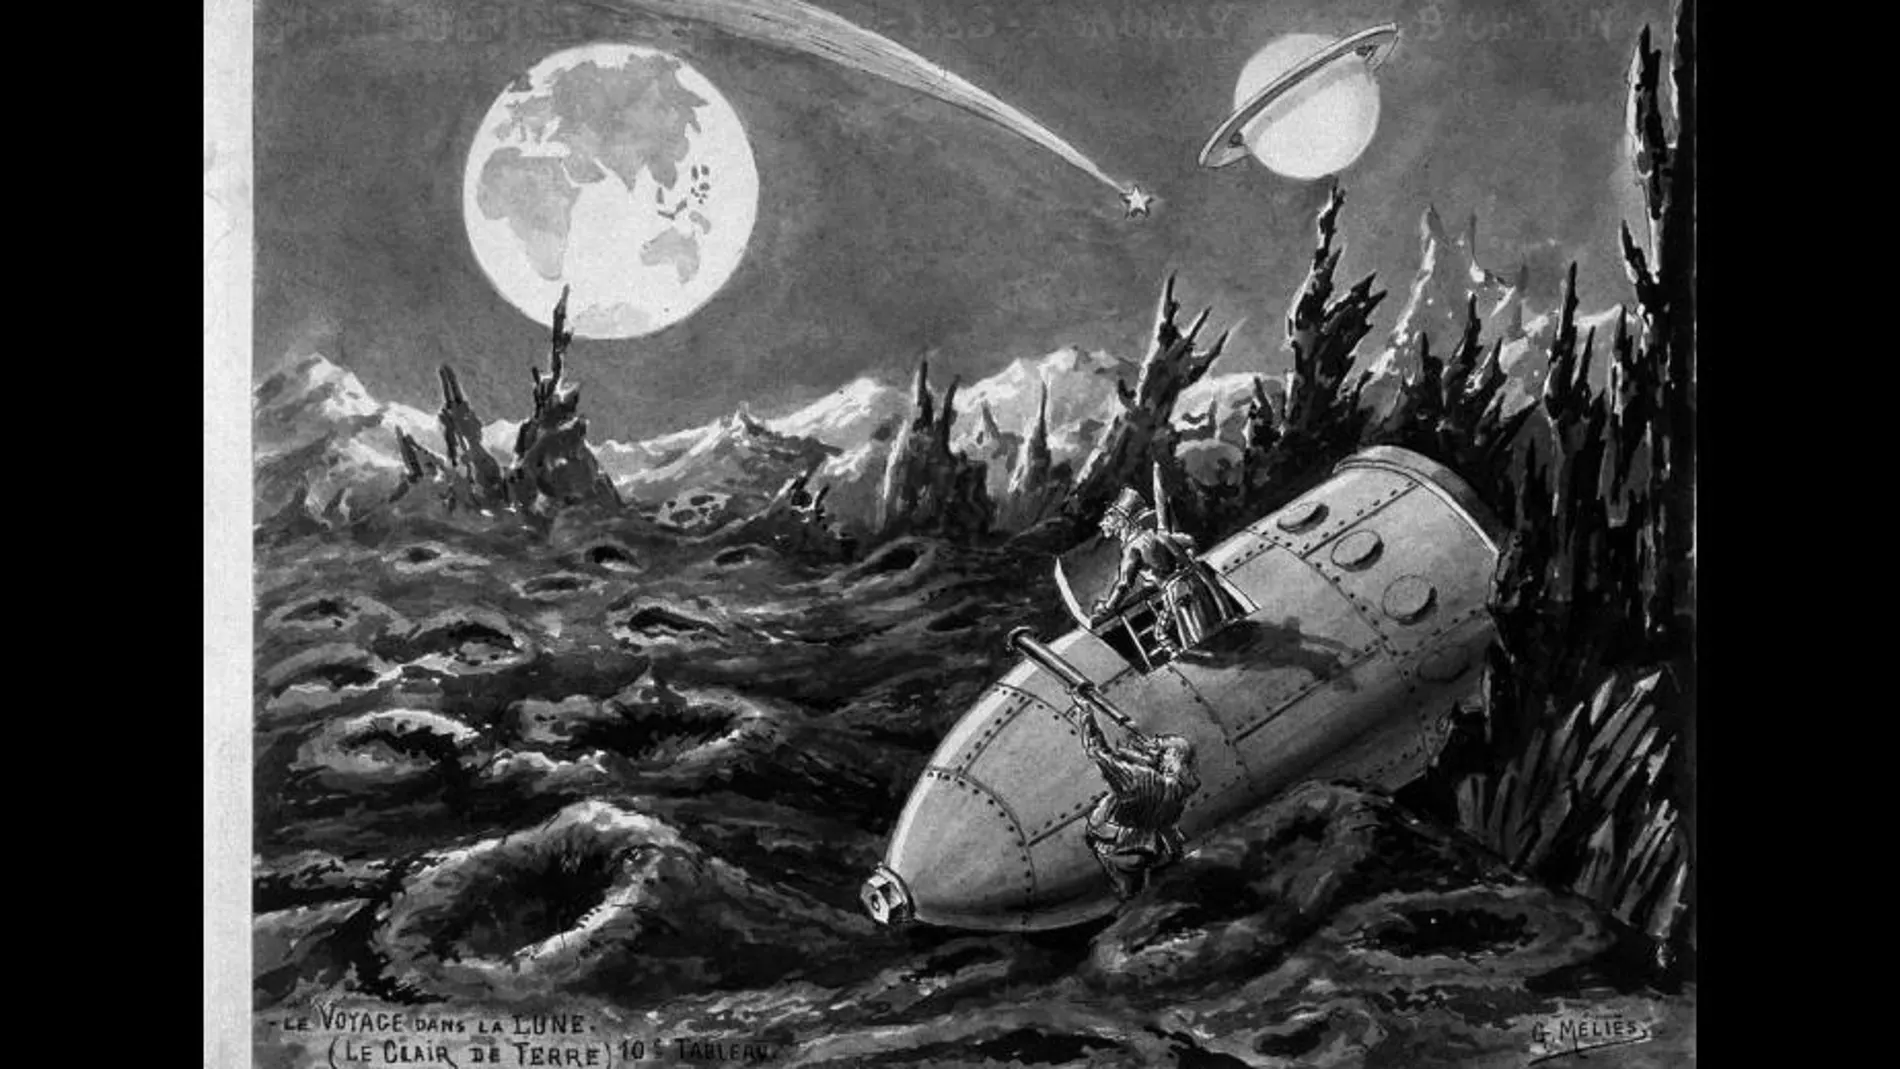 Ilustración de Méliès sobre el viaje a la luna de Julio Verne